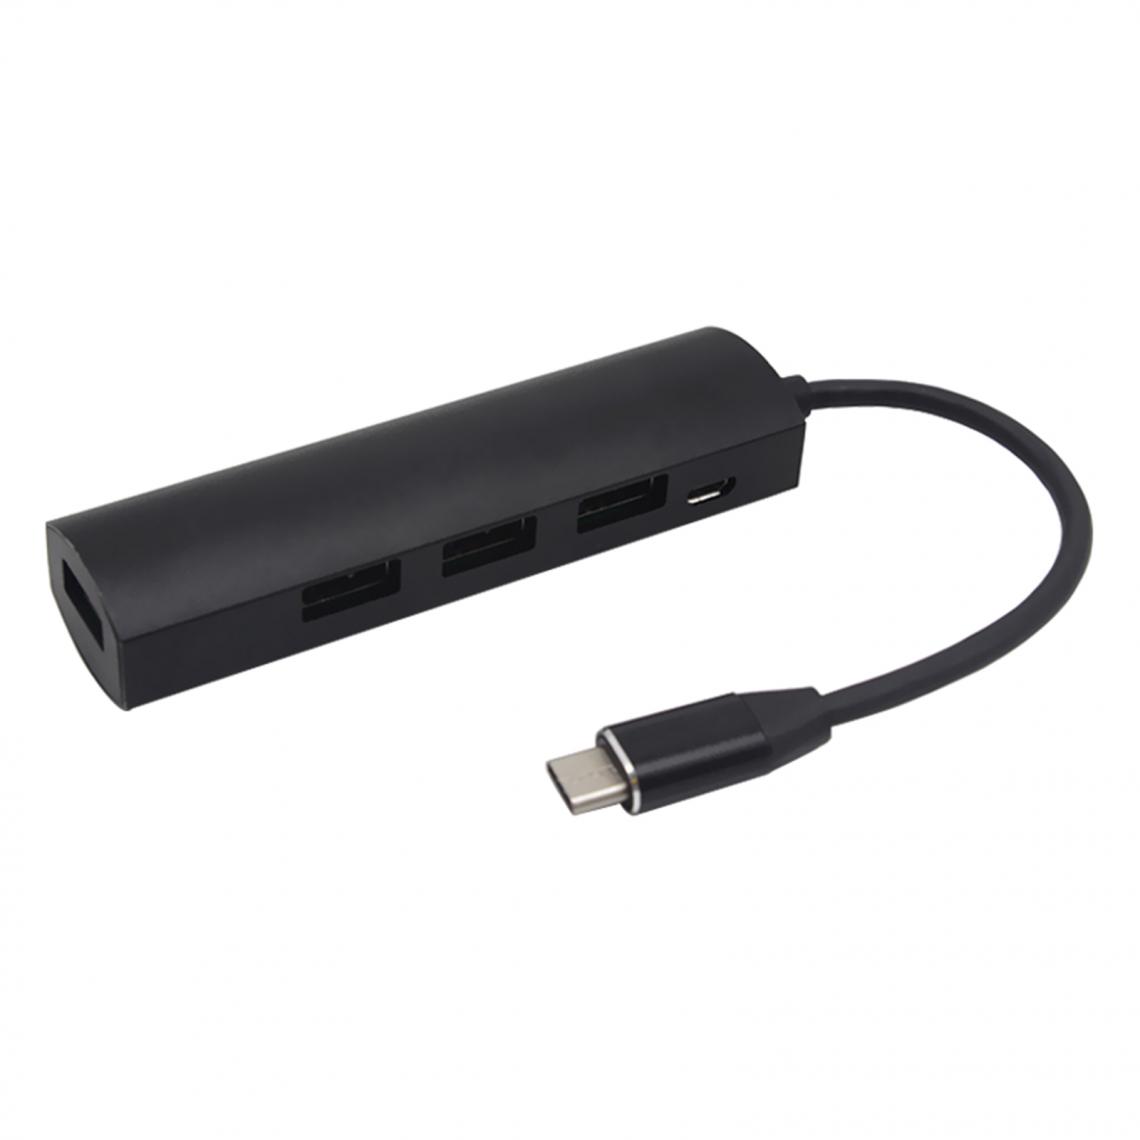 marque generique - Connecteurs Hub USB Type-C Câble Adaptateur USB 3.0 2.0 Pour MacBook Argent - Hub